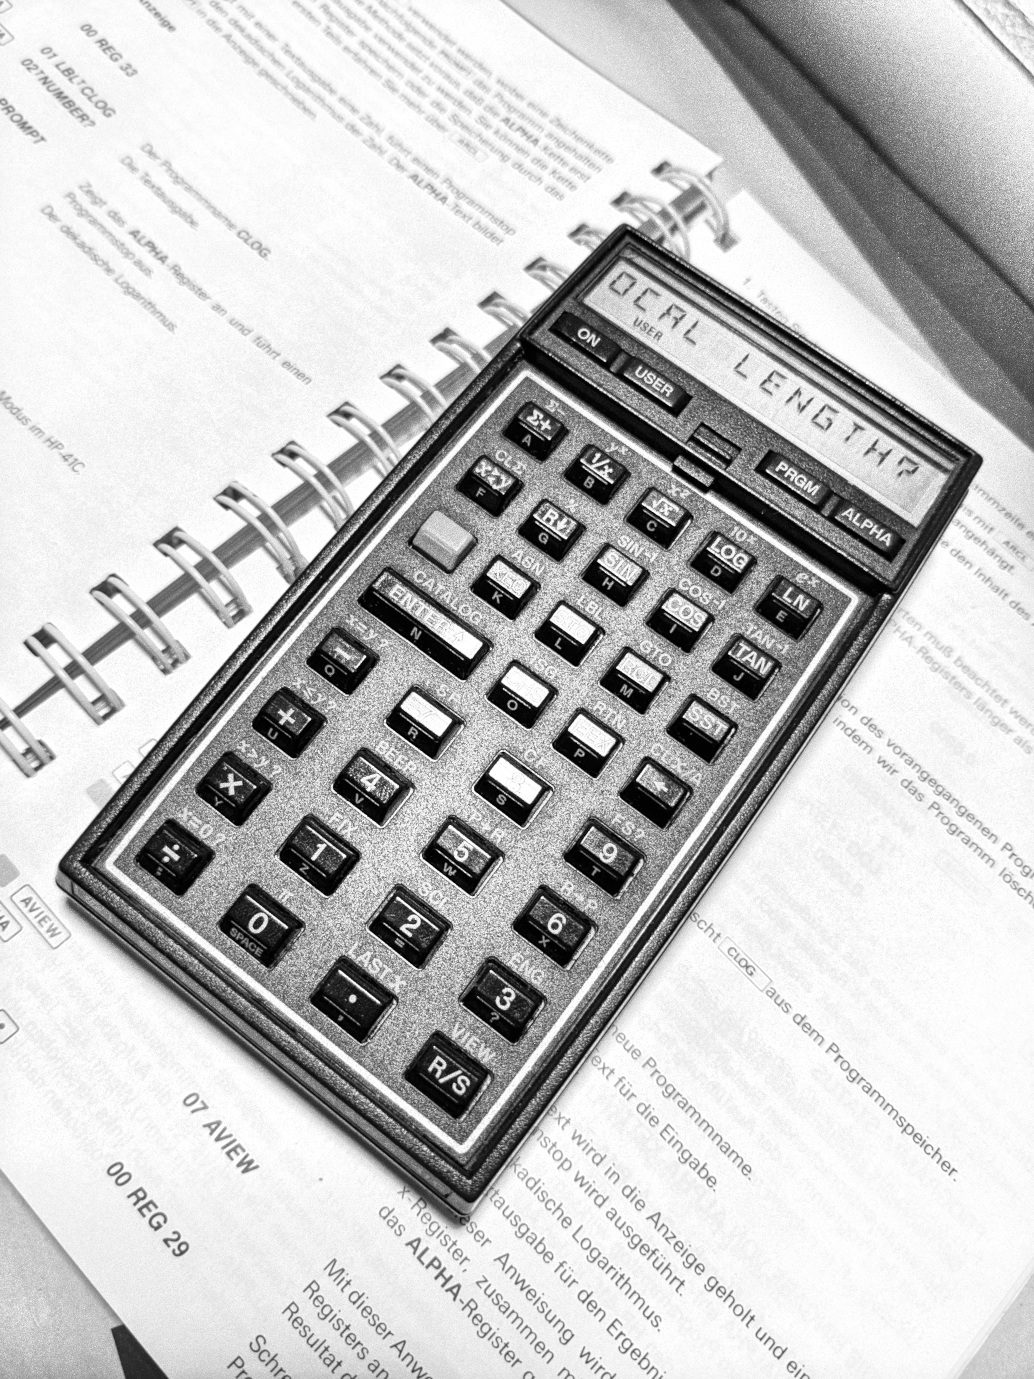 HP41C calculator